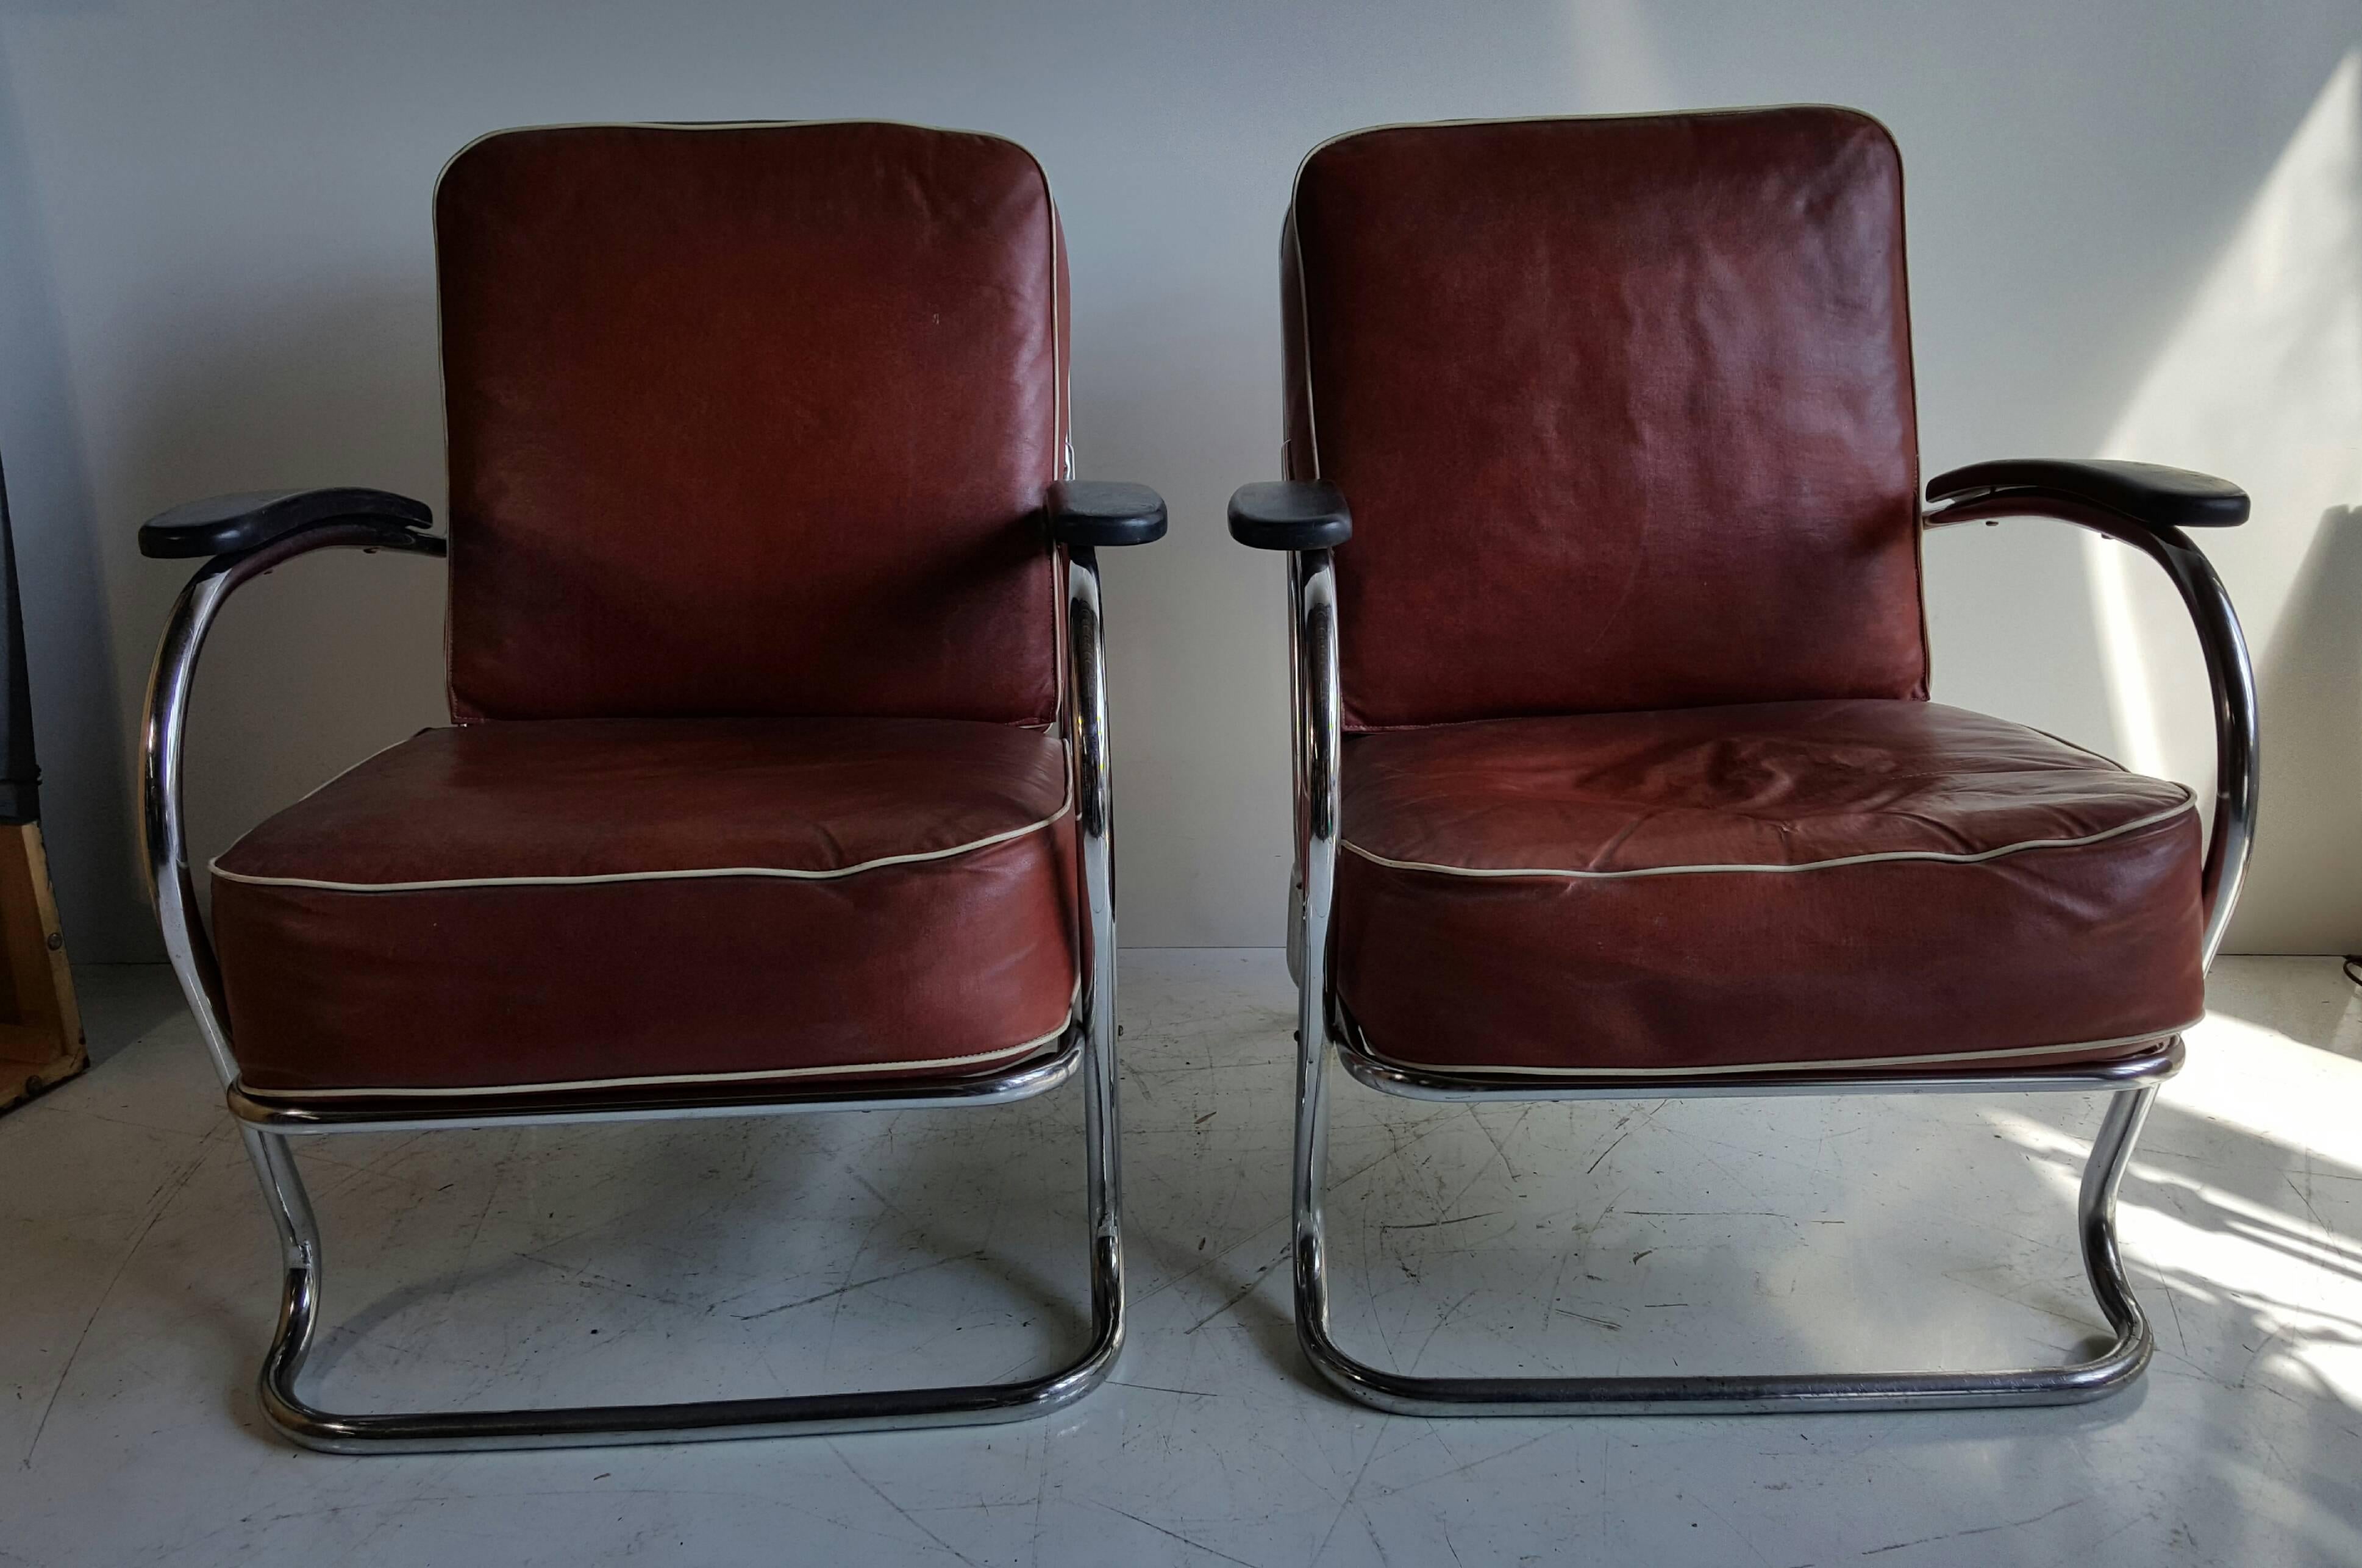 Paire de chaises longues en tube chromé de style Art déco, conçues par K.E M Weber pour Lloyds M-One, au design classique et aérodynamique. Extrêmement confortable, elle conserve remarquablement les étiquettes d'origine de Lloyds ainsi que les